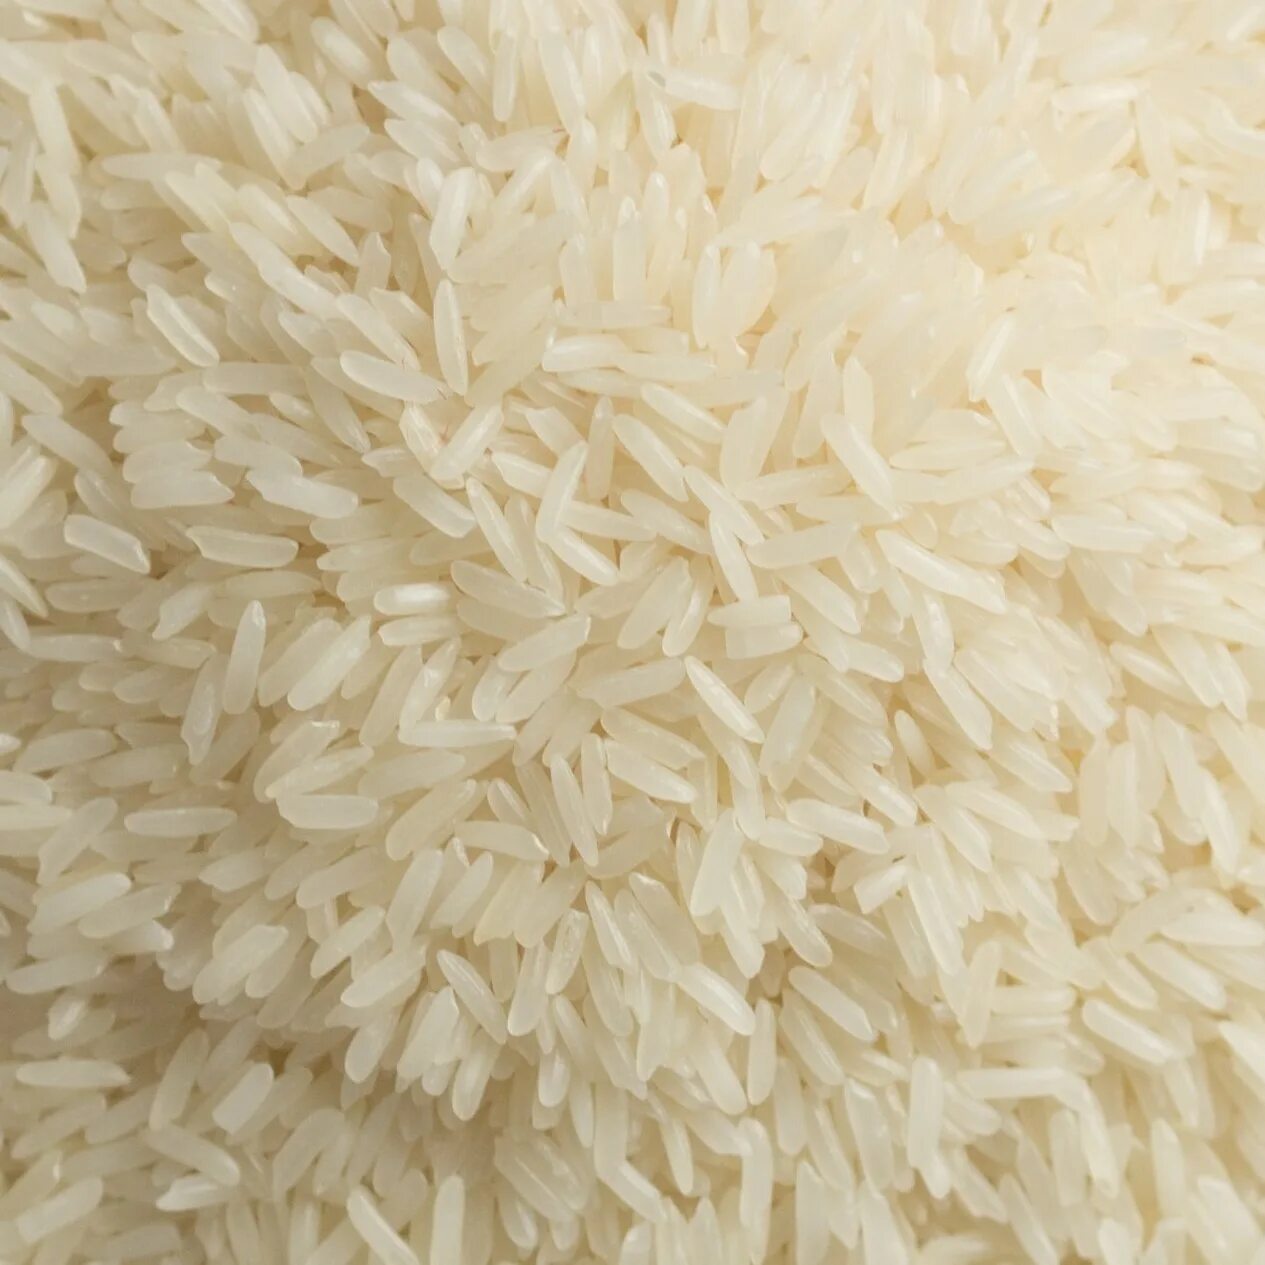 Many rice. Рис басмати вареный. Патна рис. Длиннозерный рассыпчатый рис. Виды риса басмати.